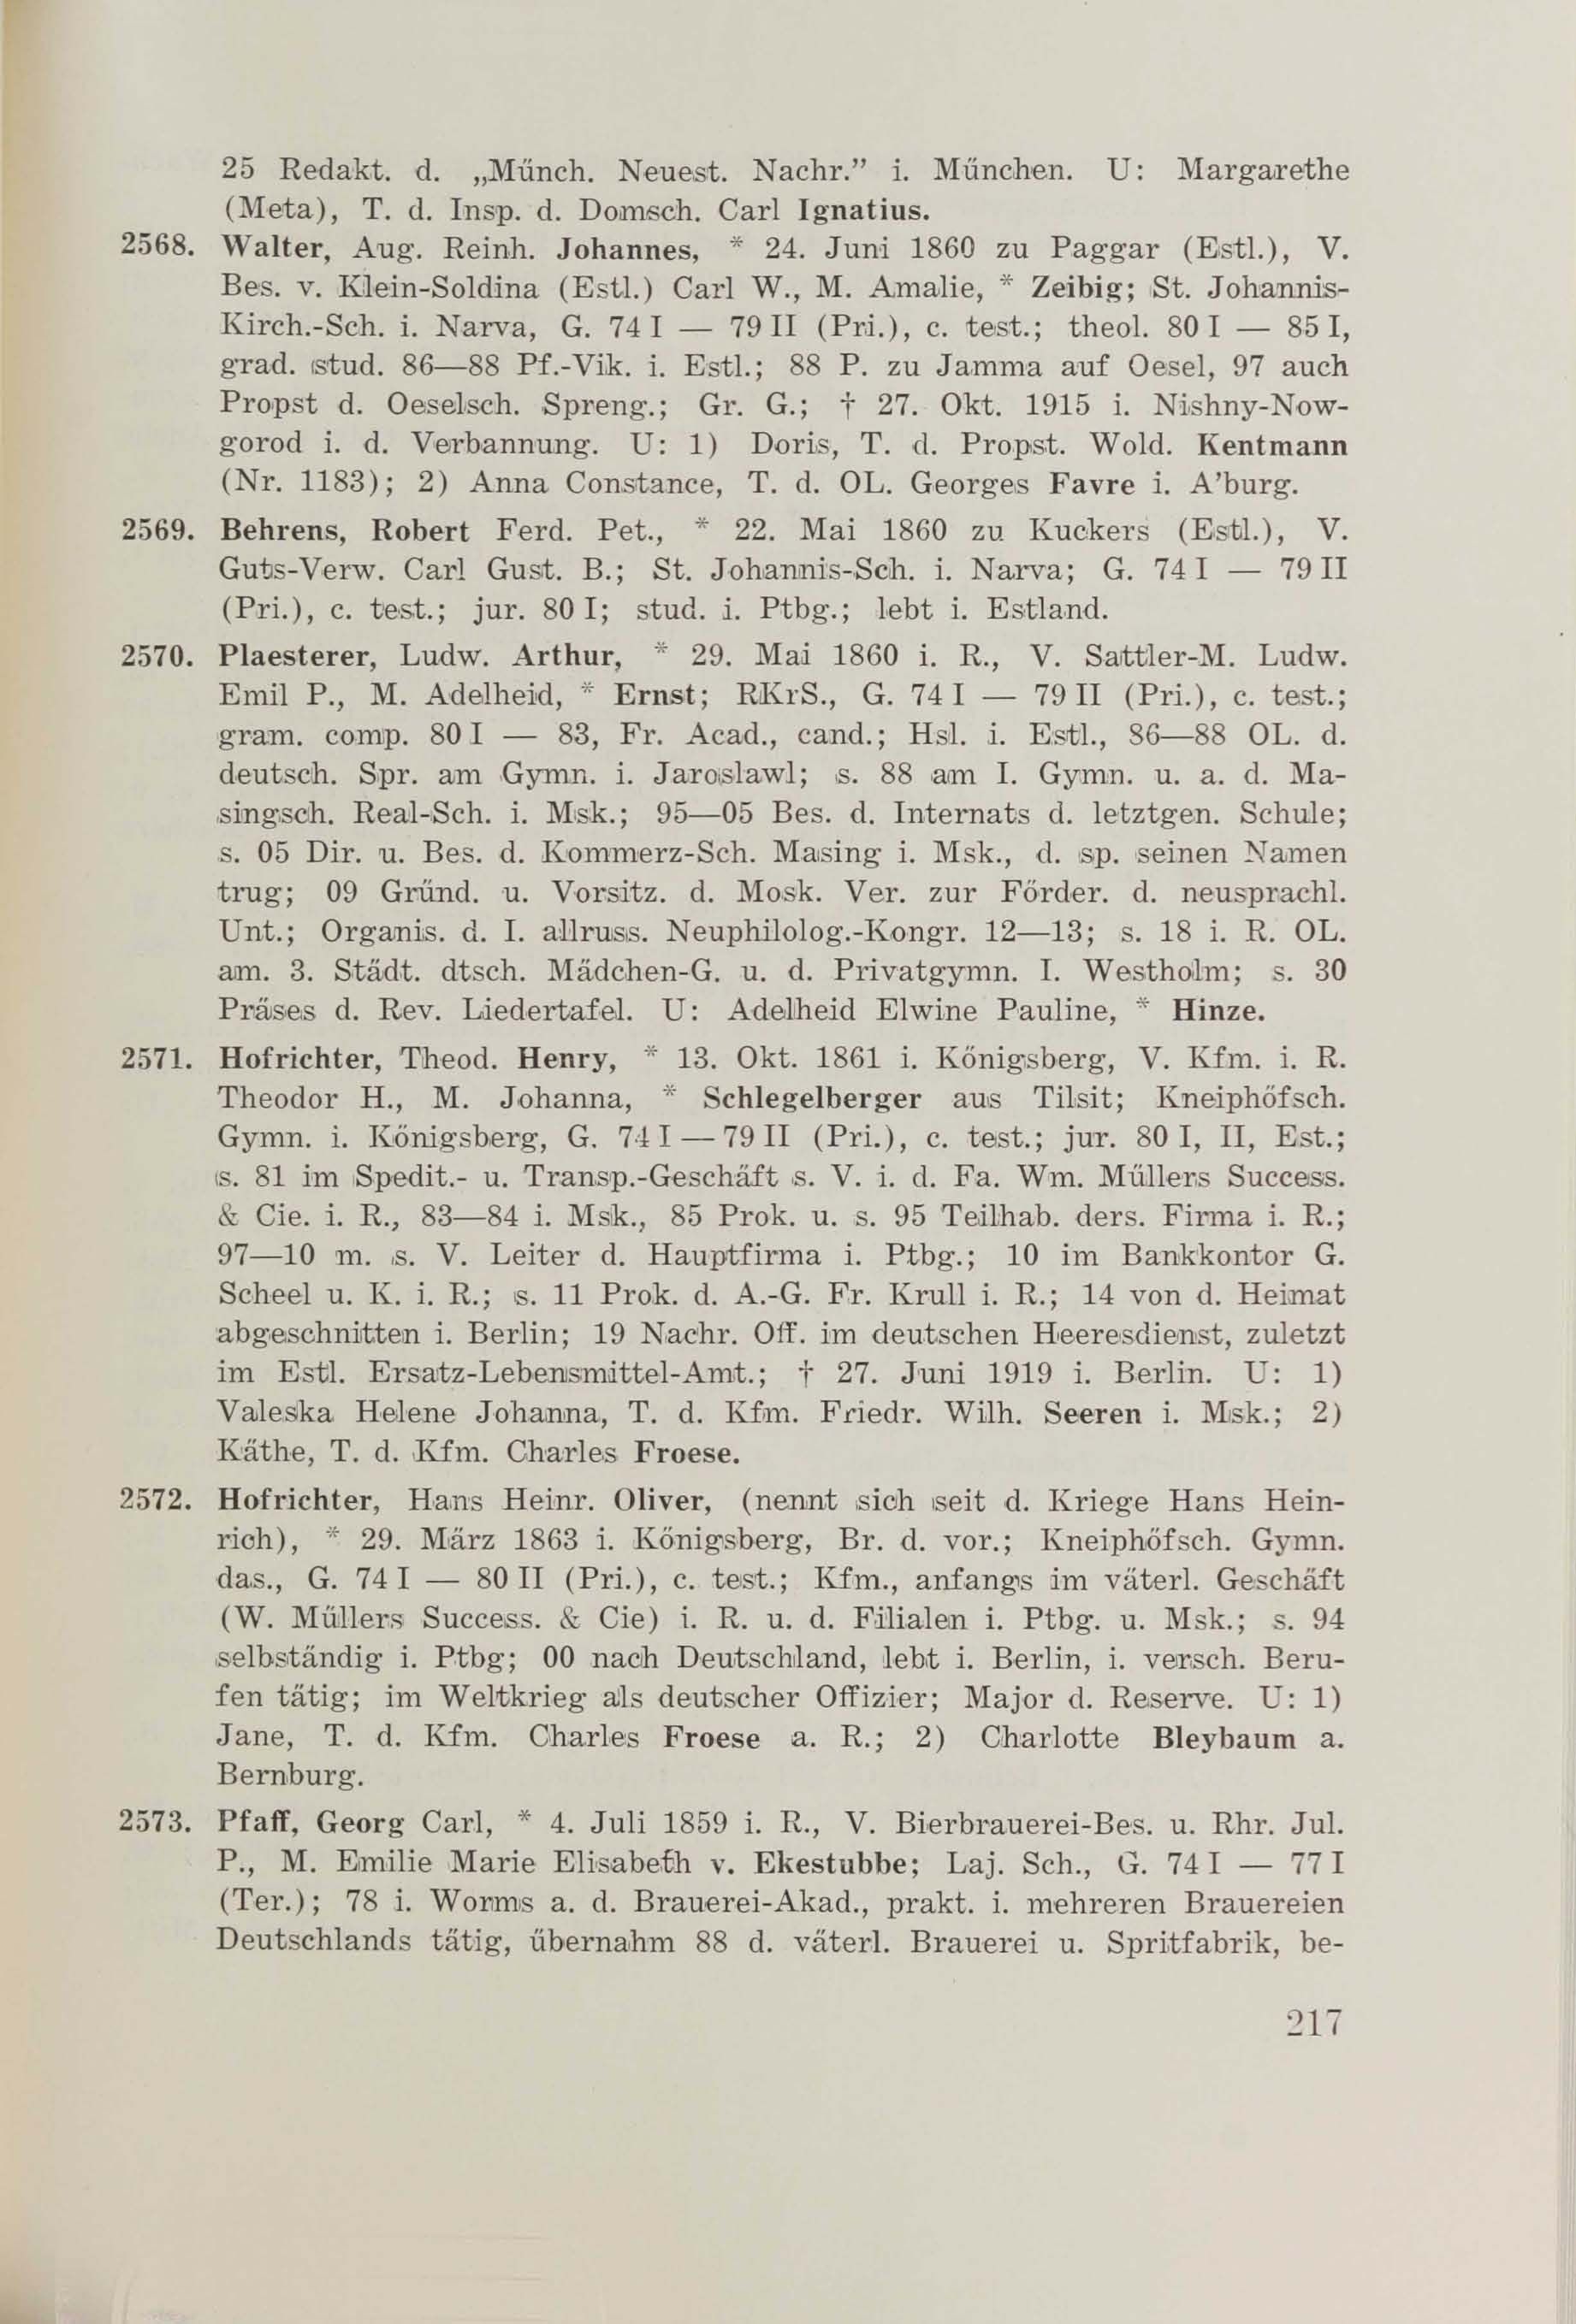 Schüler-Verzeichnis des Revalschen Gouvernements-Gymnasiums 1805–1890 (1931) | 227. (217) Main body of text